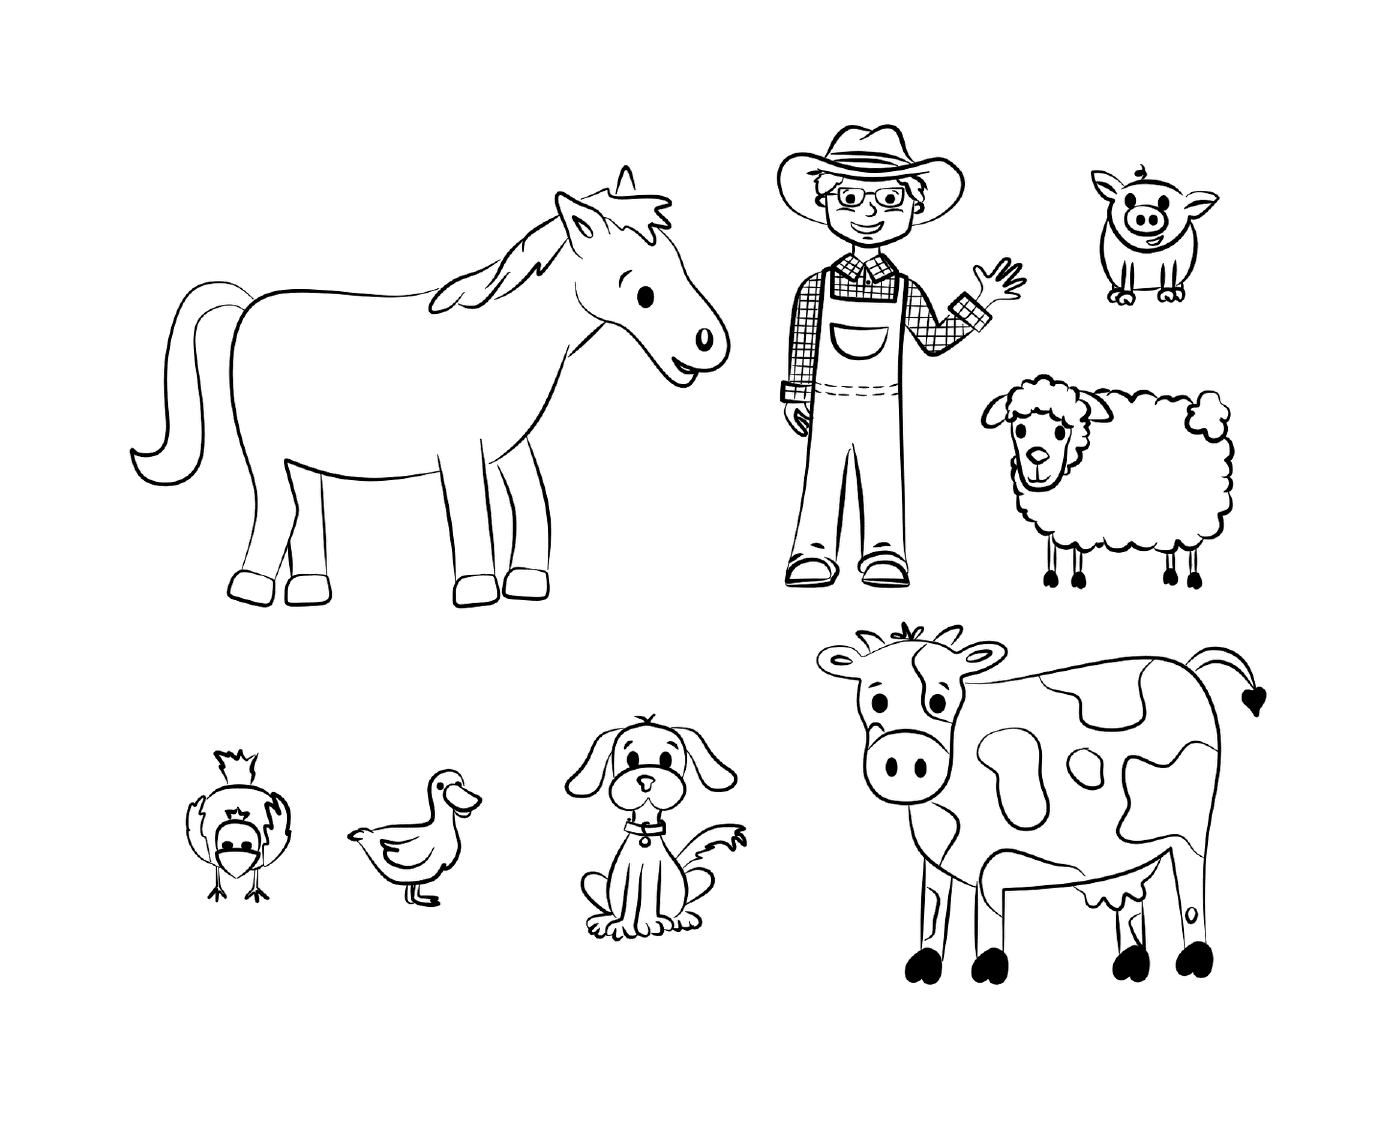  ein Bauer, eine Kuh, ein Pferd, ein Hund, eine Ente und ein Huhn 